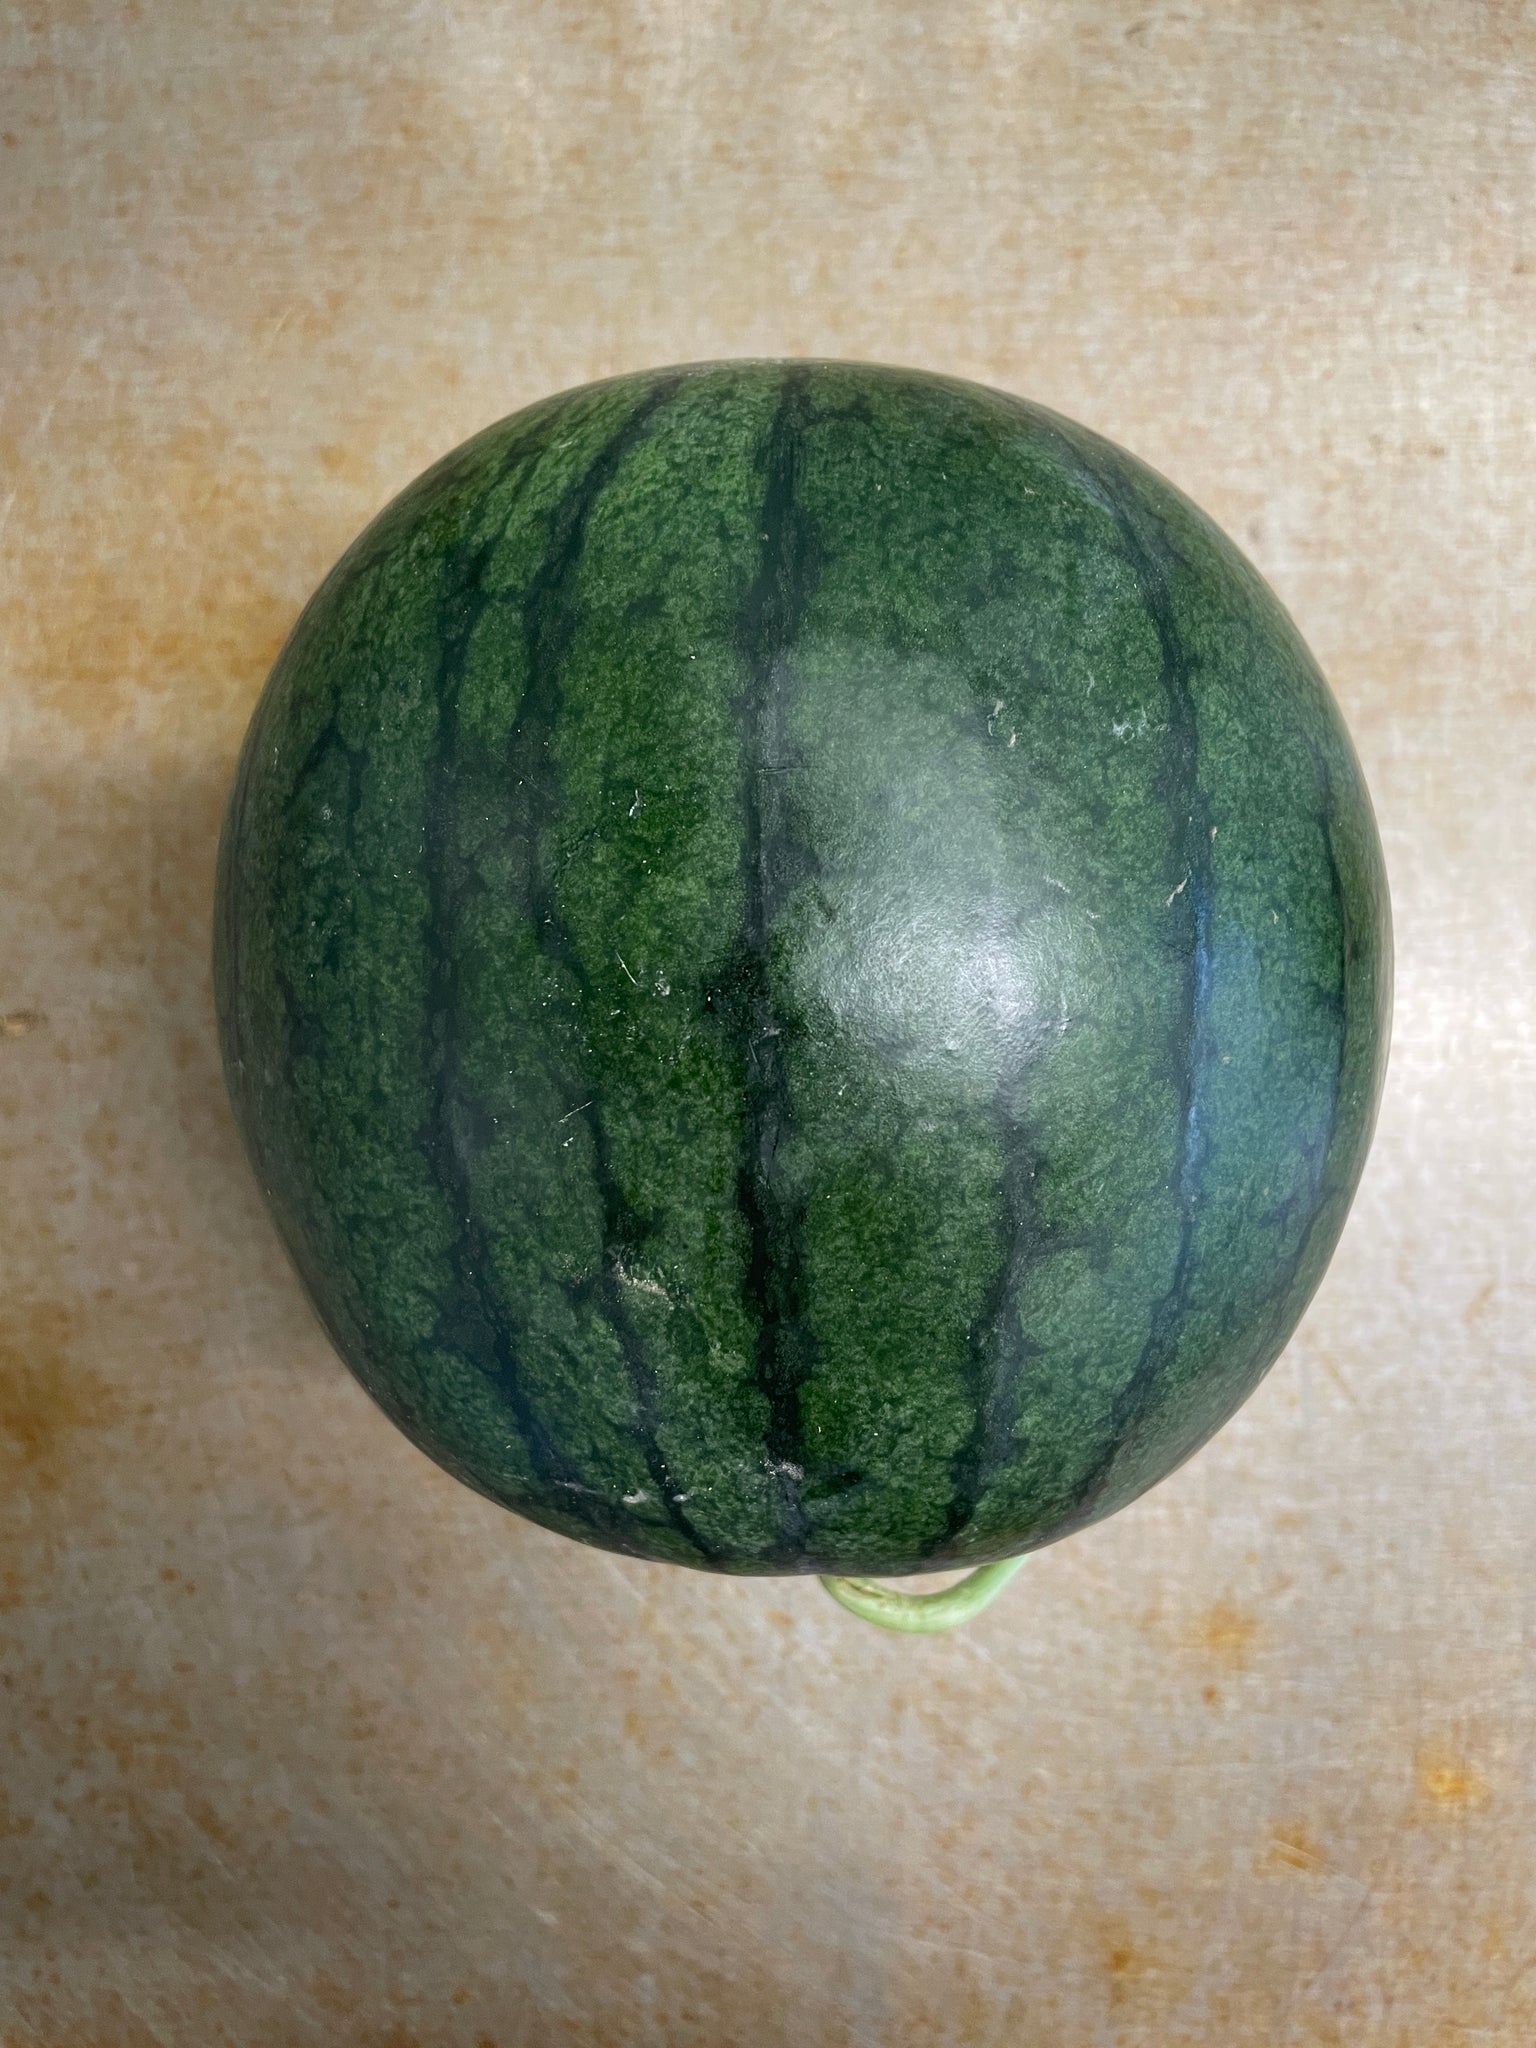 Natsu Coco Watermelon, Seeded - Personal Size